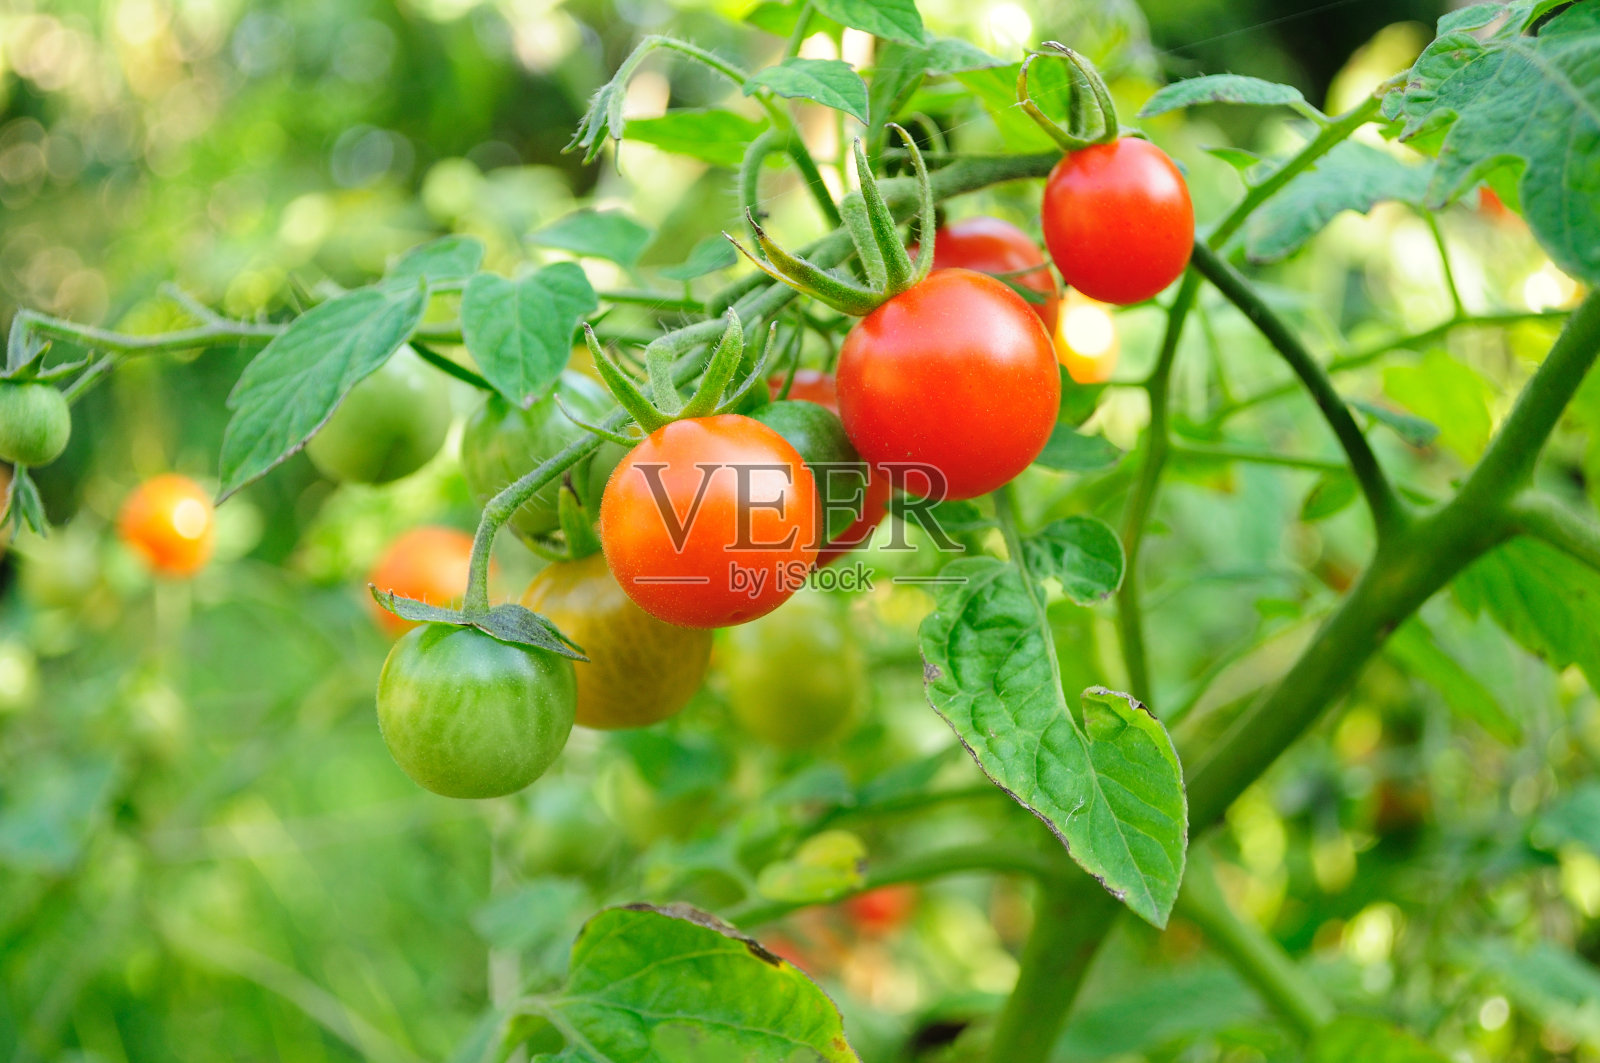 悬挂在植株上的樱桃番茄的特写照片摄影图片